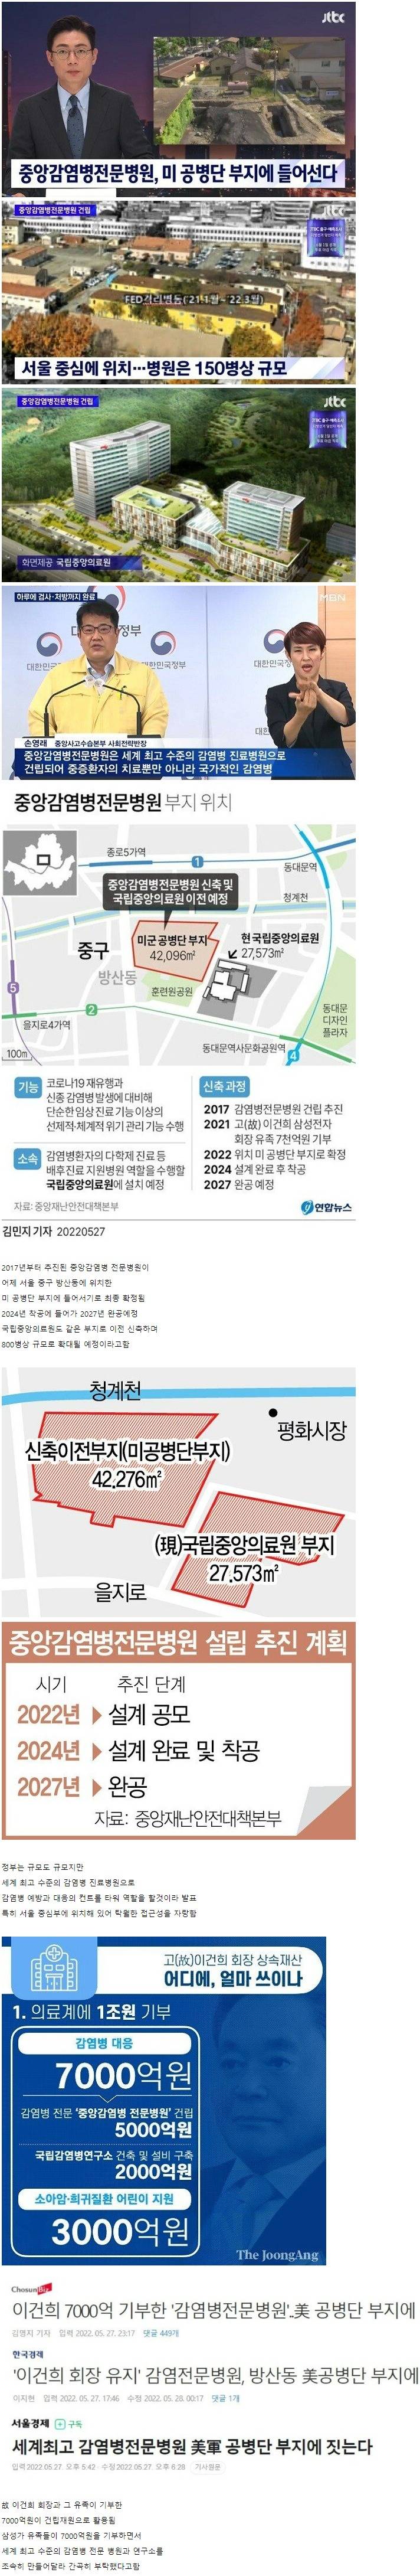 서울에 생긴다는 세계 최고수준 감염병 전문병원